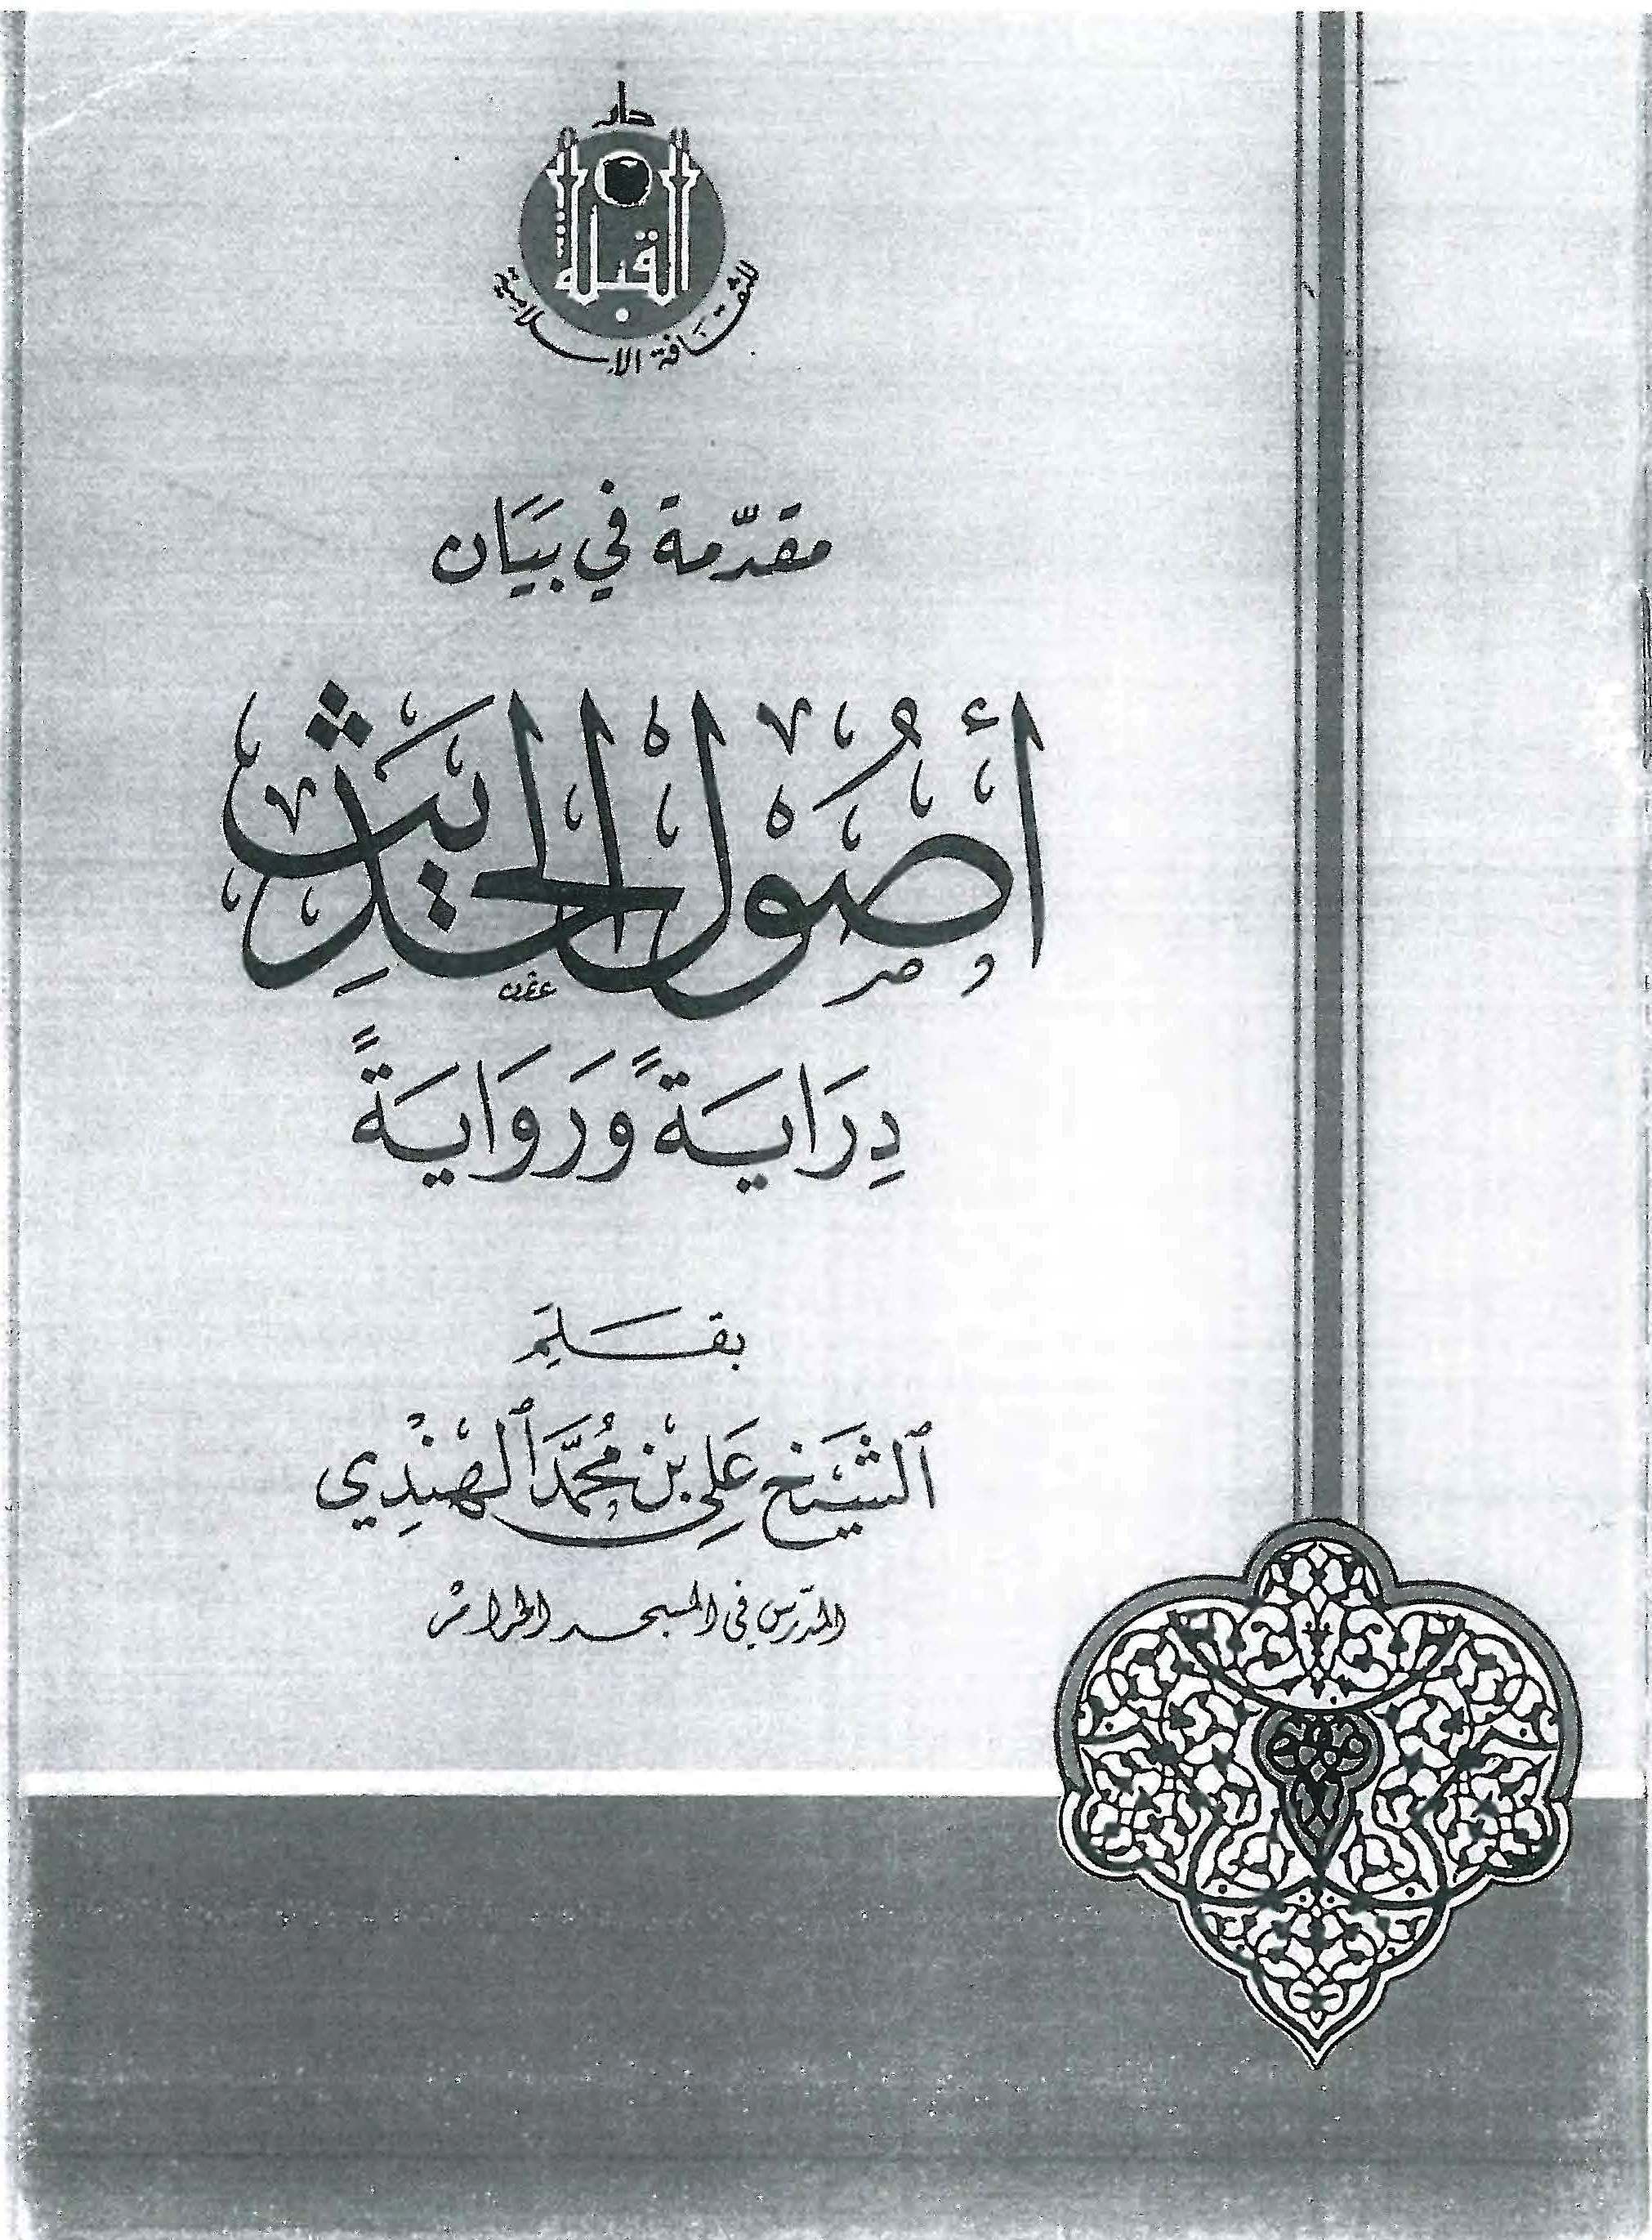 حمل كتاب "مقدمة في بيان أصول الحديث-روايةً ودرايةً" للشيخ علي الهندي (ت: 1419هـ) pdf  P_475d4su91